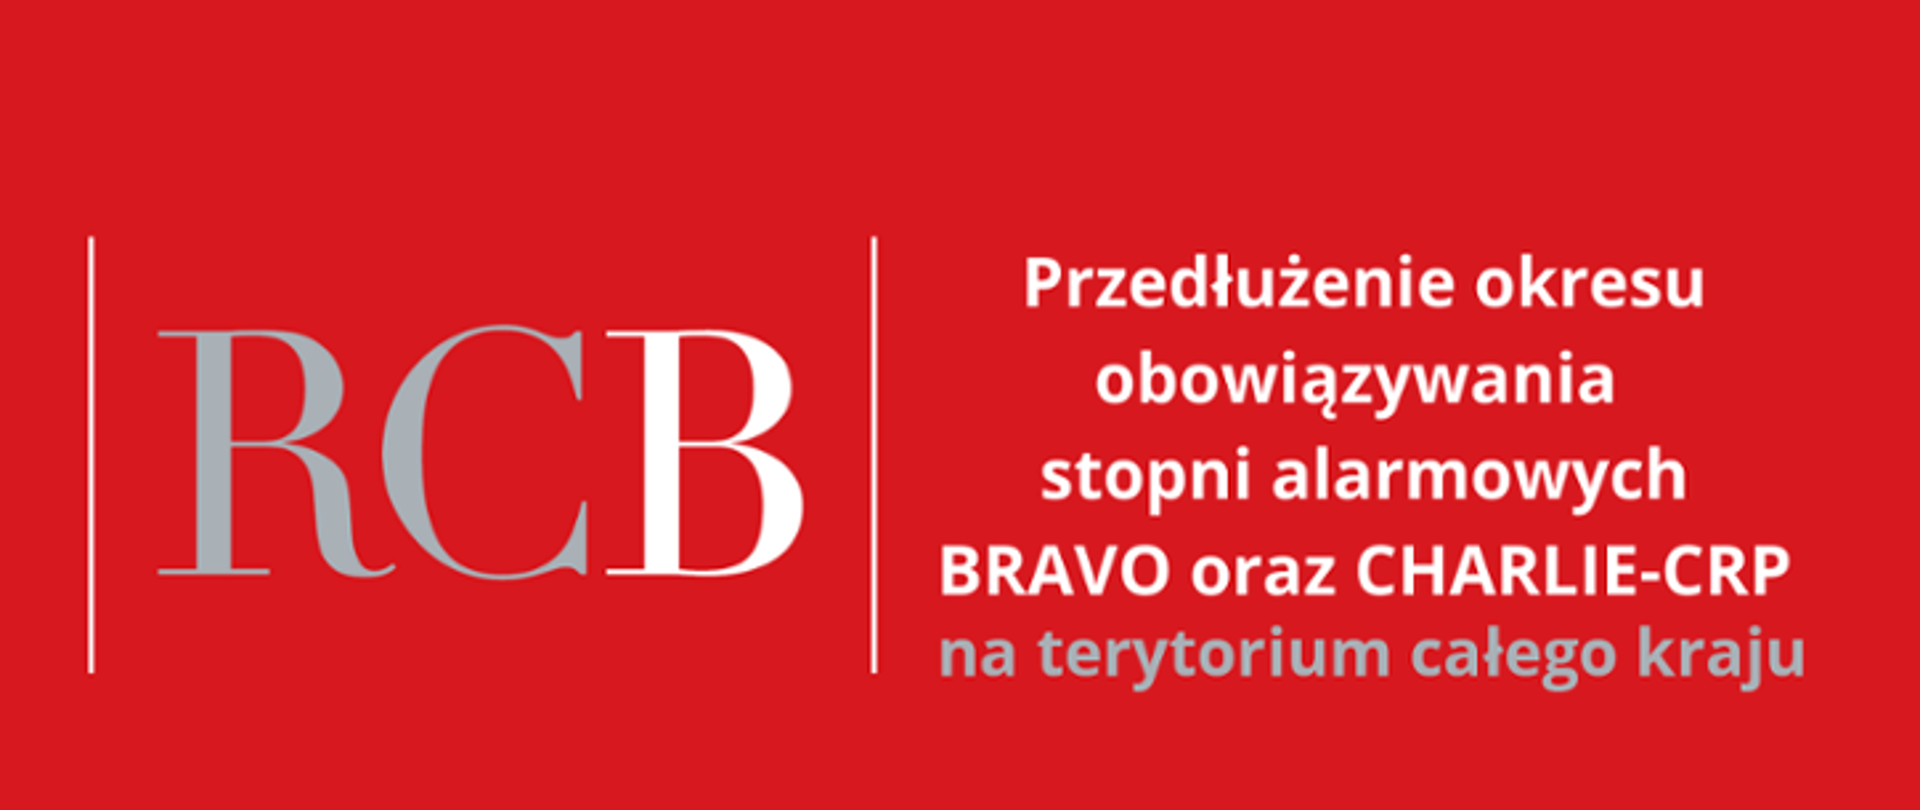 Plakat na czerwonym tle z wpisem przedłużenie stopni alarmowych BRAVO oraz CHARLIE-CRP na terytorium całego kraju